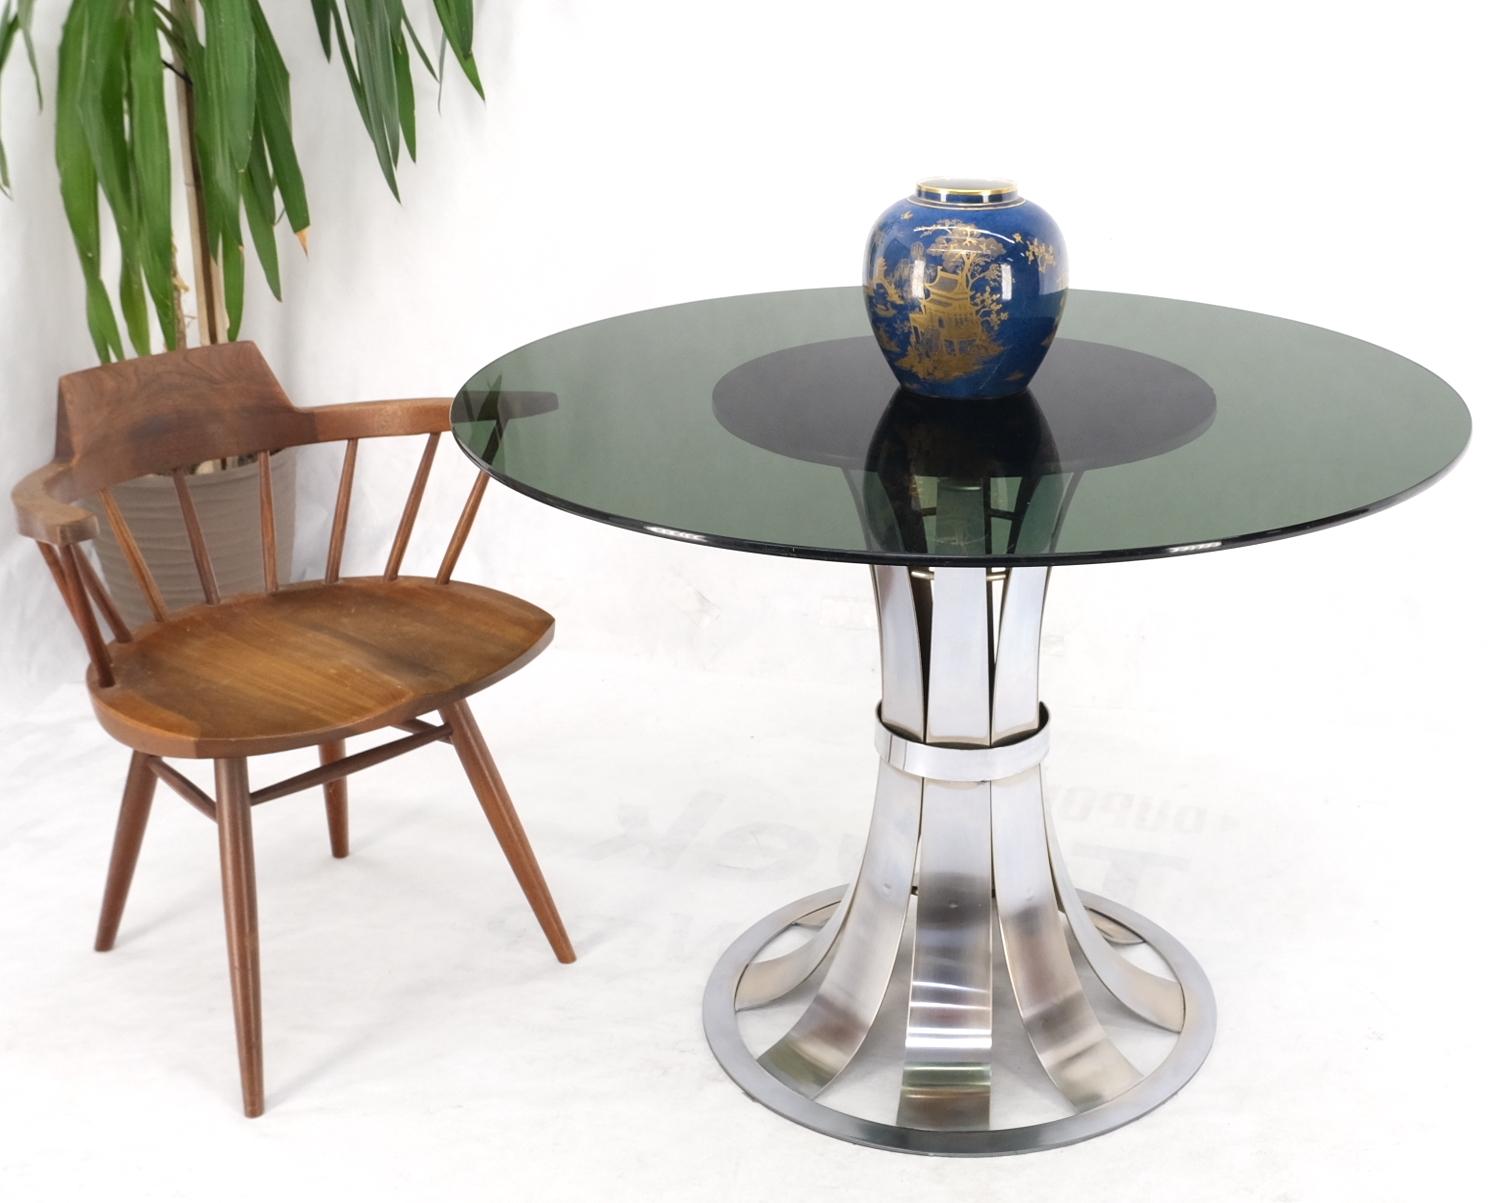 Table de café-restaurant Russel Woodard à base d'aluminium poli et à plateau rond en verre fumé.